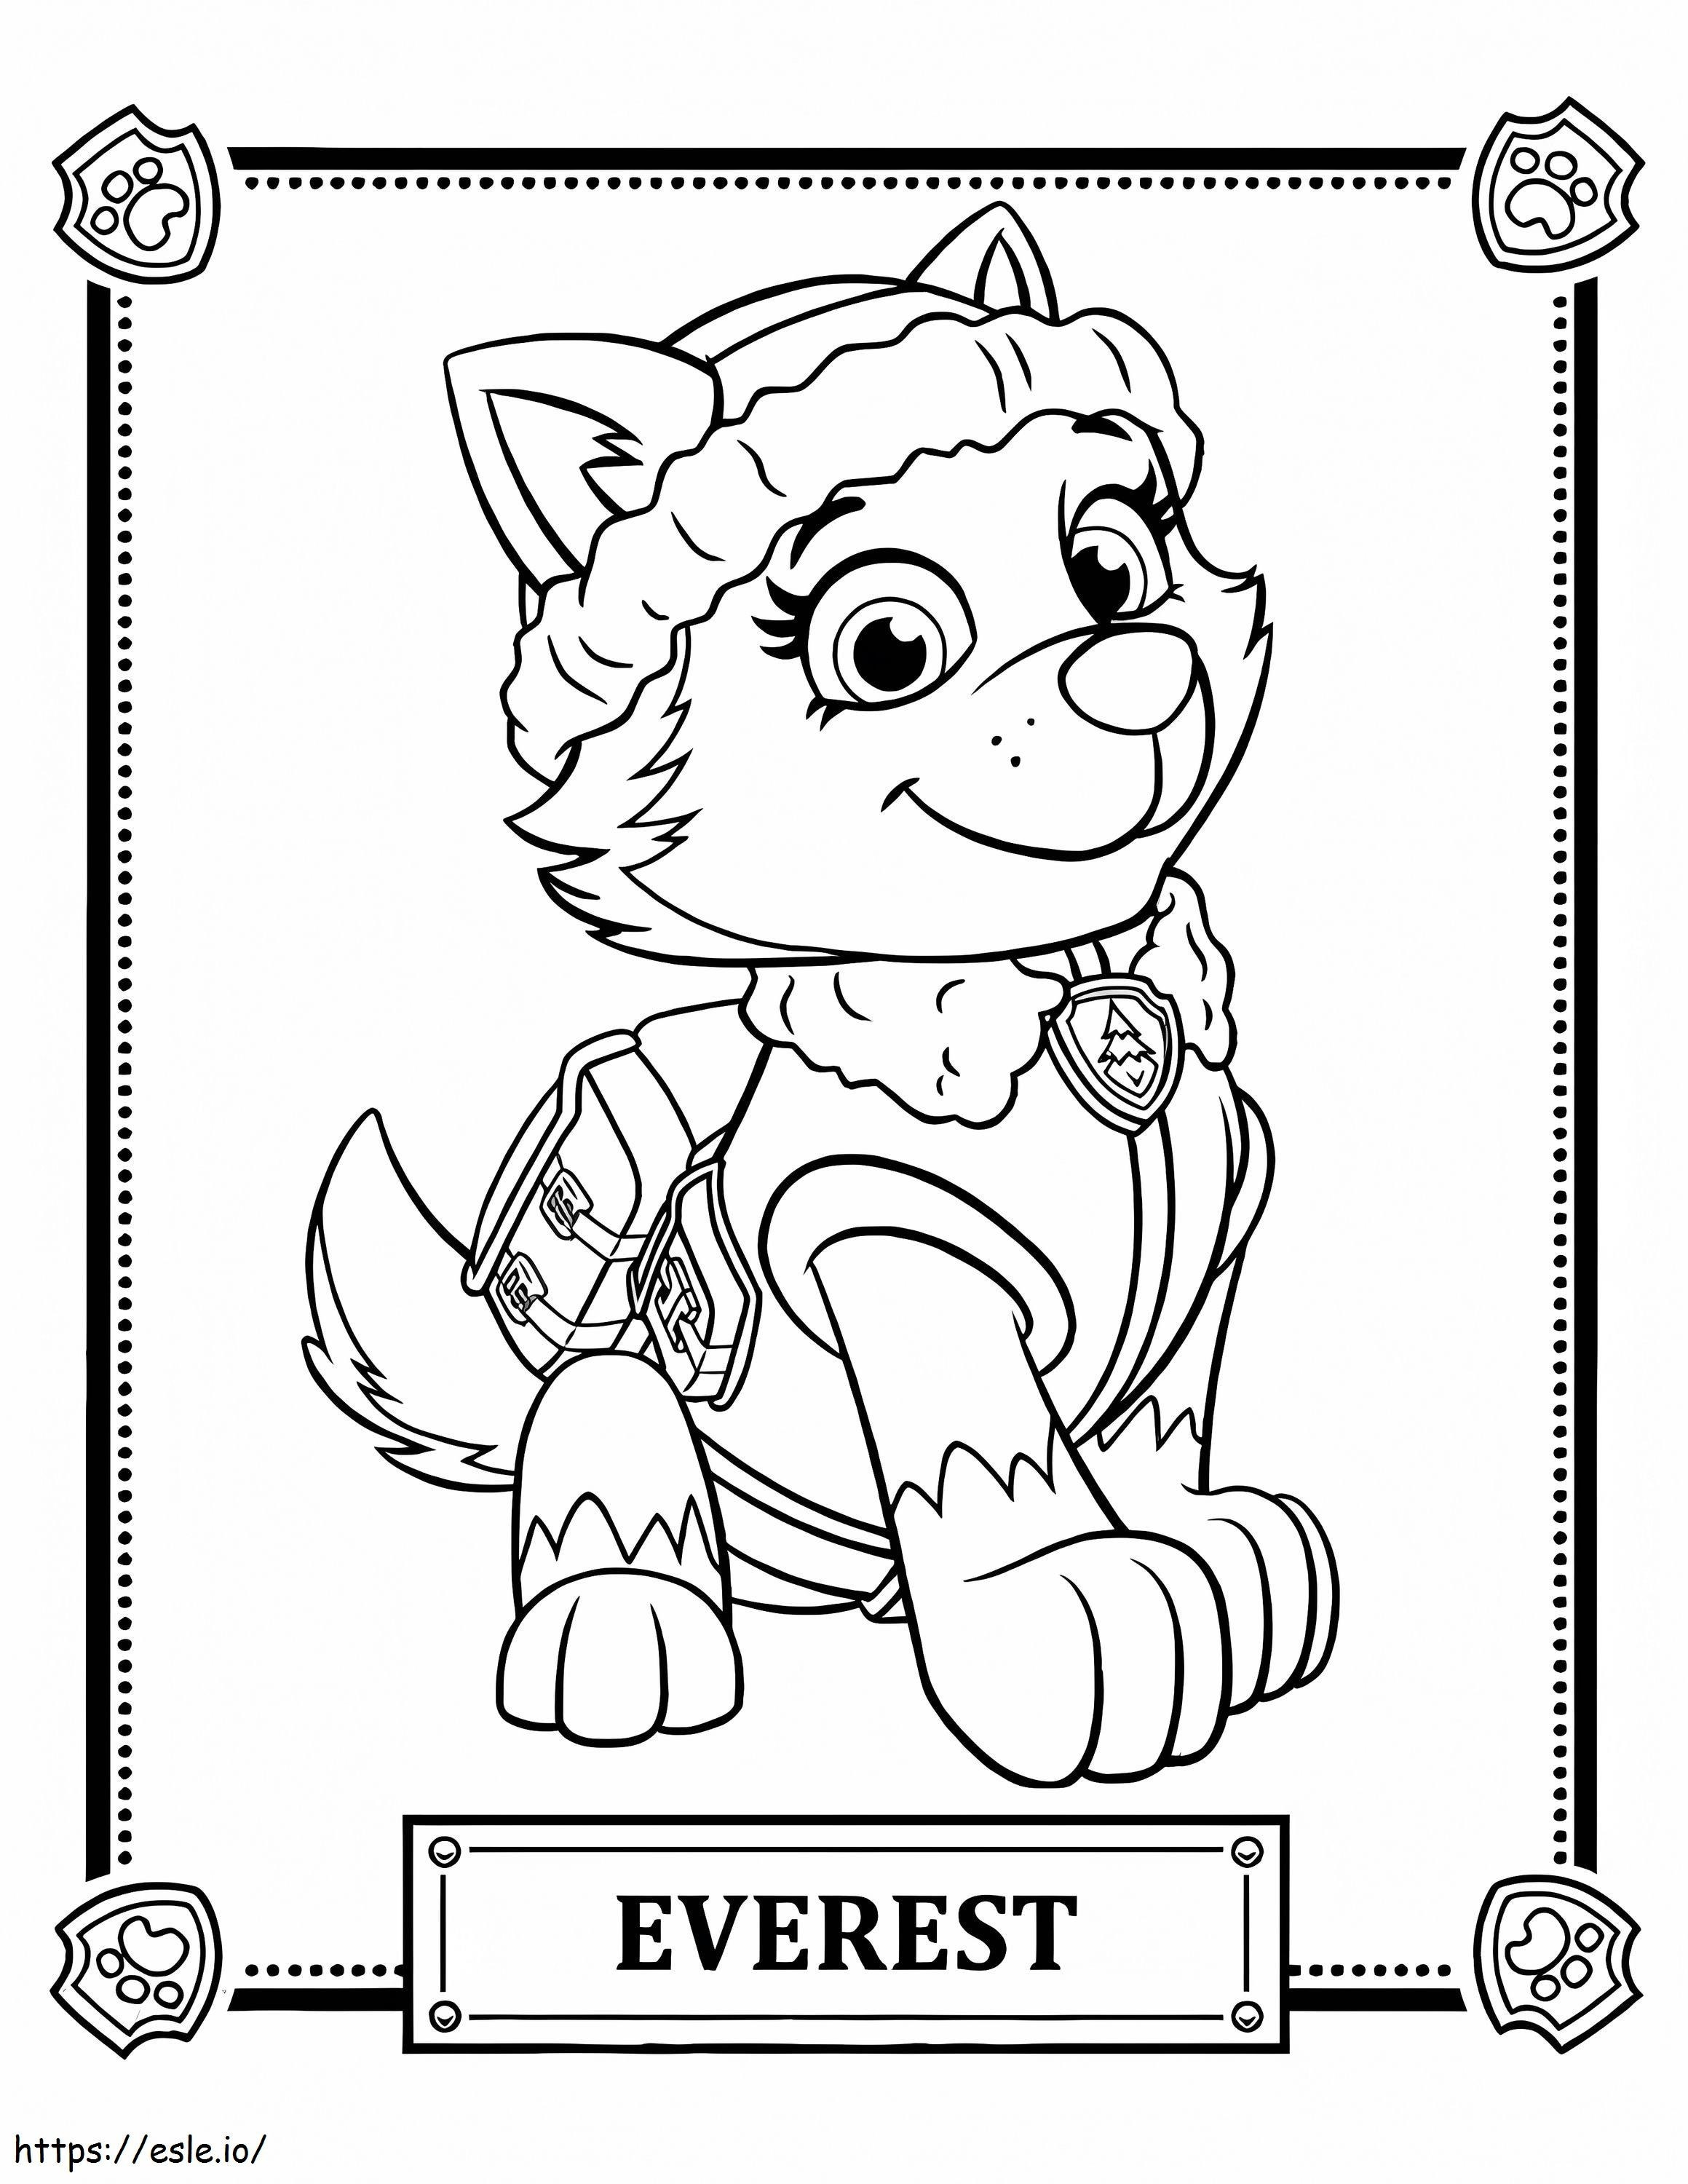 Patrulha Canina do Everest para colorir